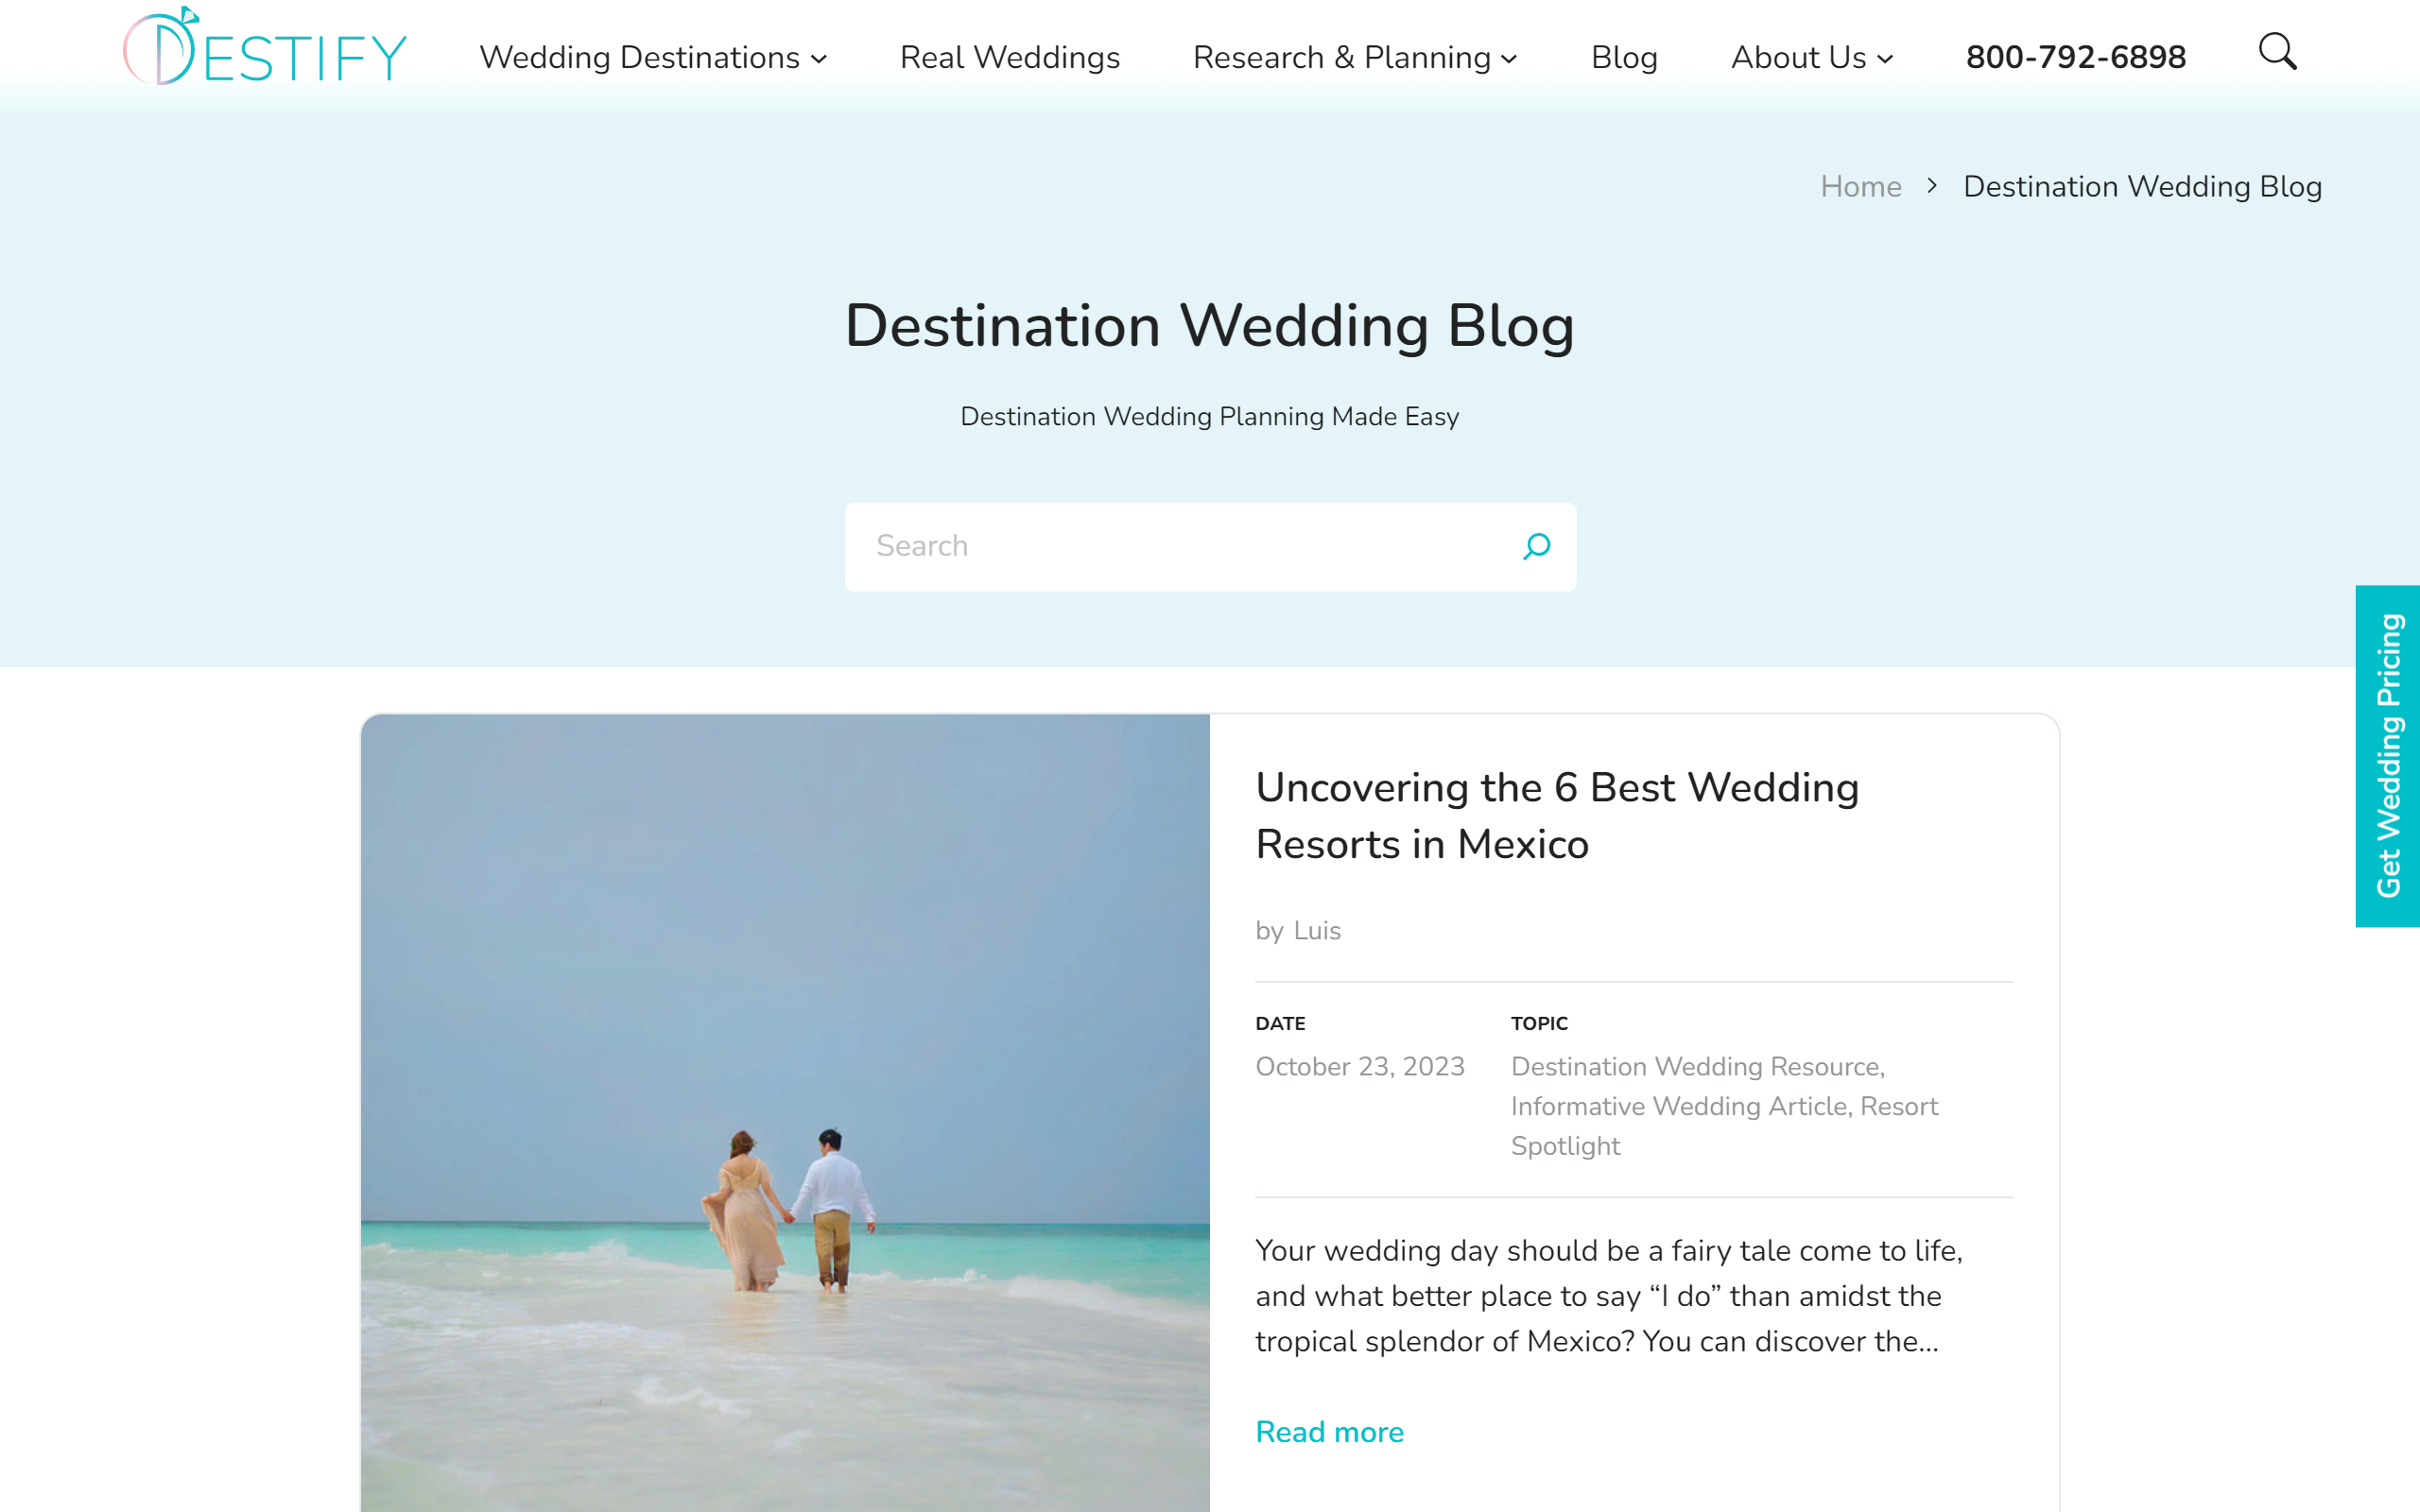 Destify Blog Wedding Blog